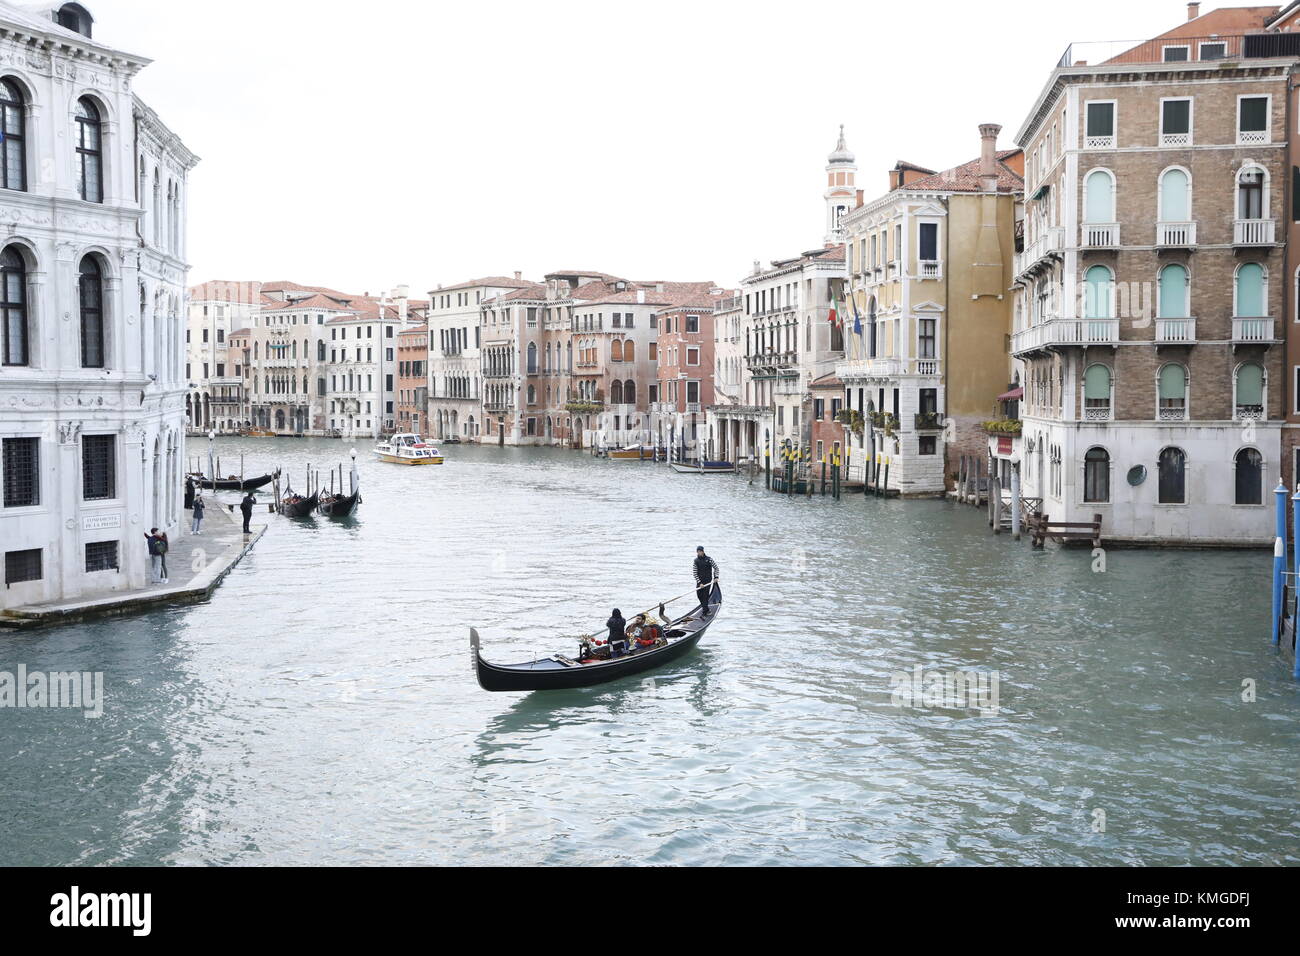 Venedig, Italien: eine Gondel bringt Passagiere entlang des Grand Canal einen Kanal in der Nähe der Ponte di Rialto Brücke in Venedig, Italien. Stockfoto